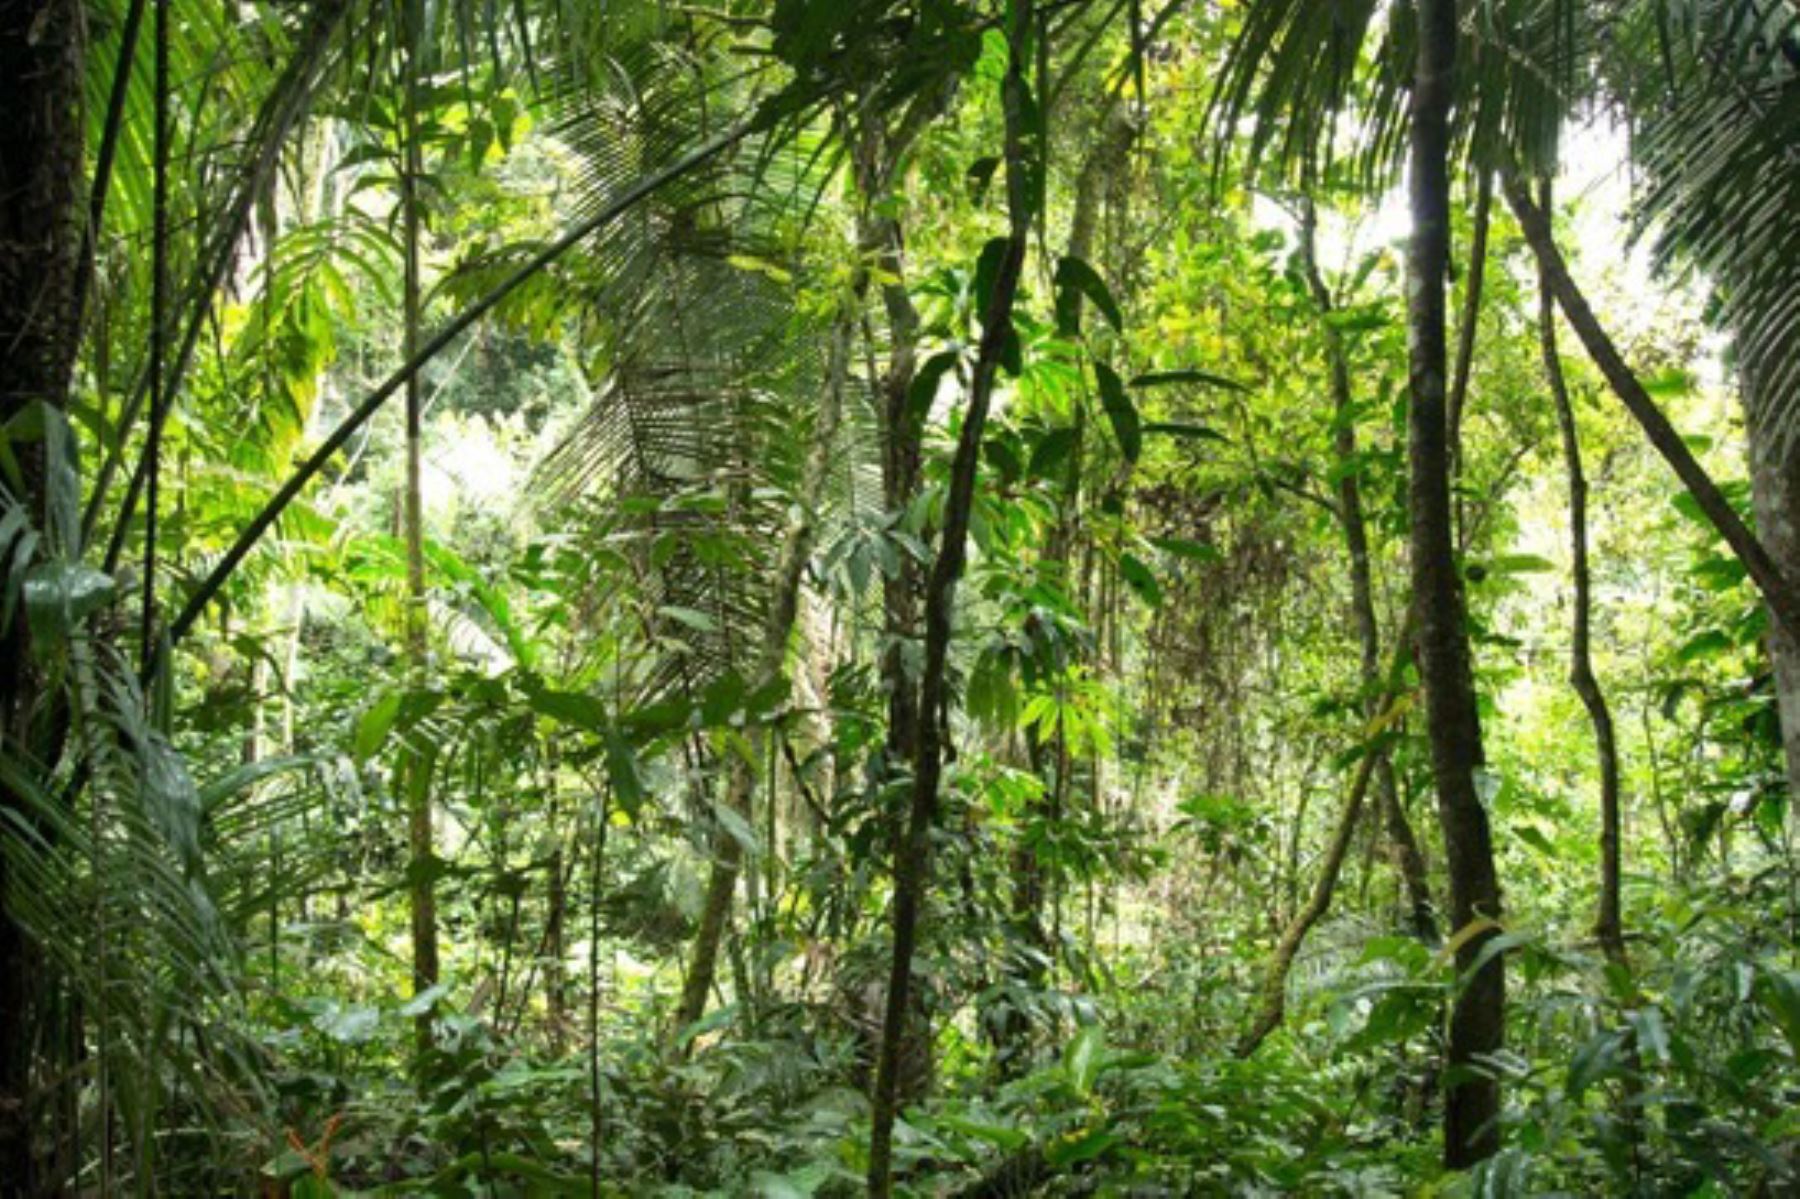 Los proyectos de inversión Somos Bosques están en proceso de estudios definitivos para luego pasar a la elaboración de un diagnóstico del estado del monitoreo de los bosques amazónicos en 11 departamentos en el ámbito de intervención.